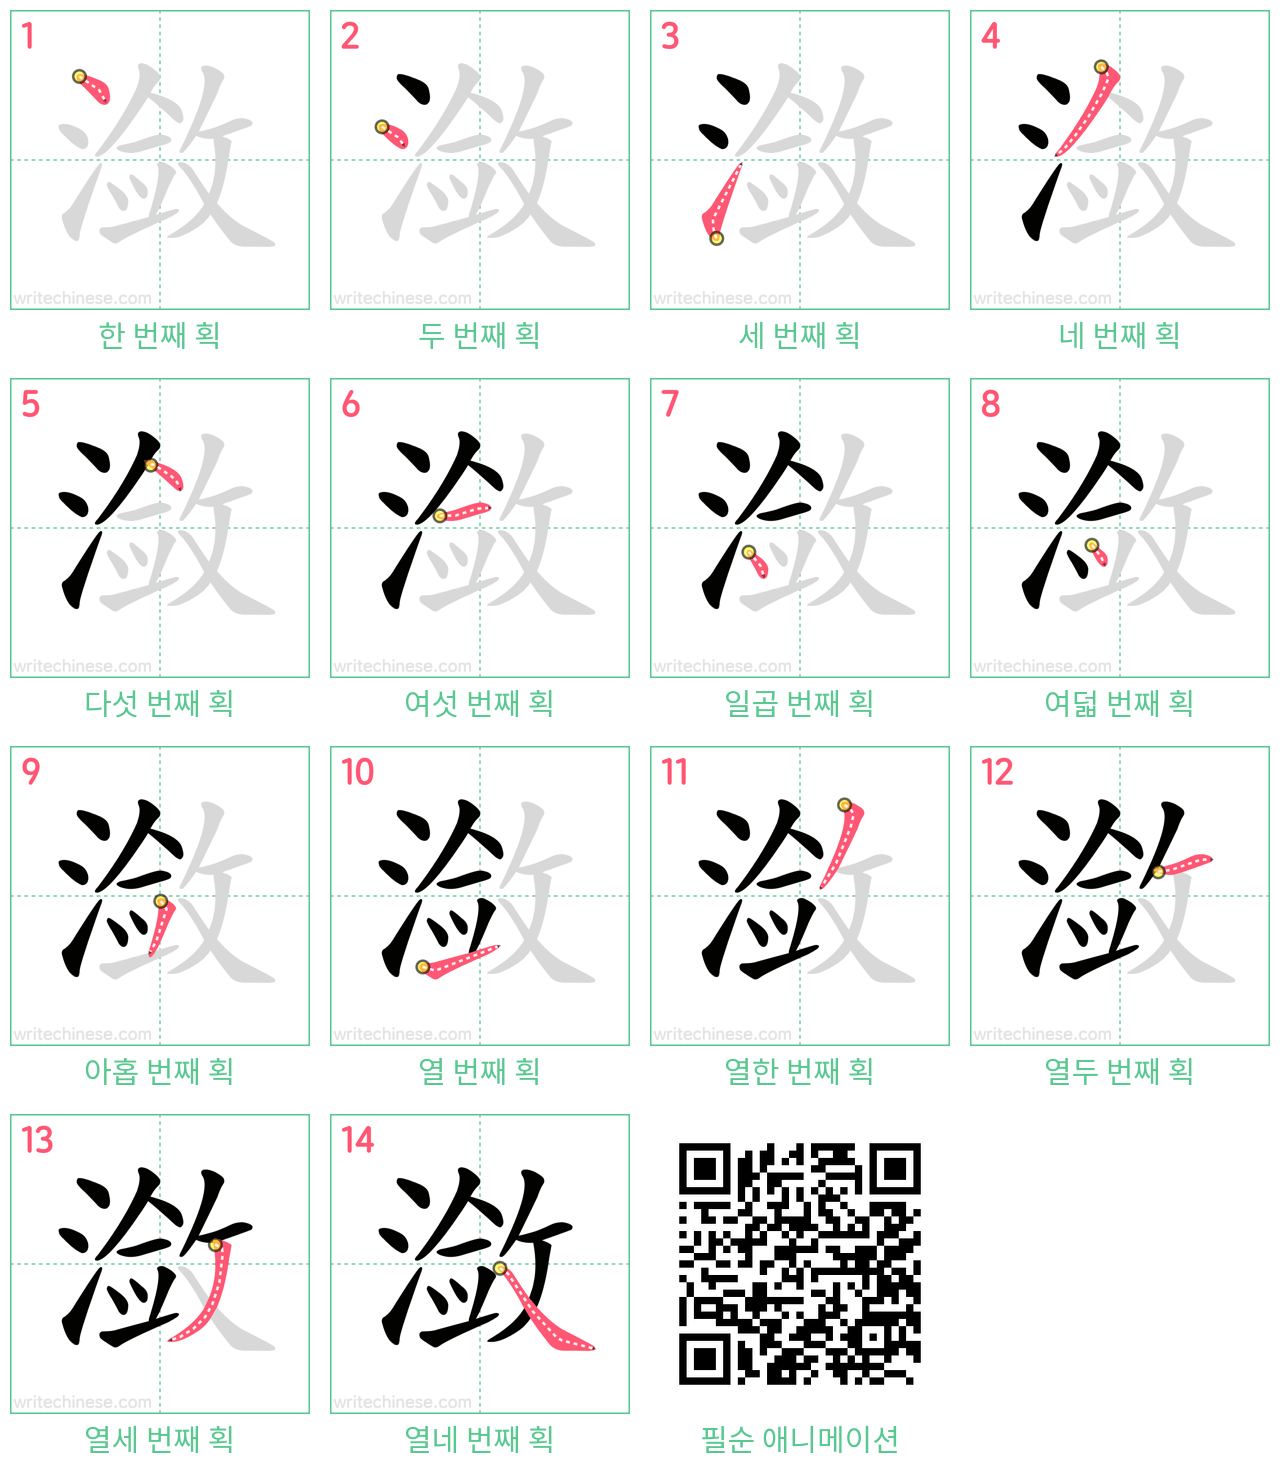 潋 step-by-step stroke order diagrams